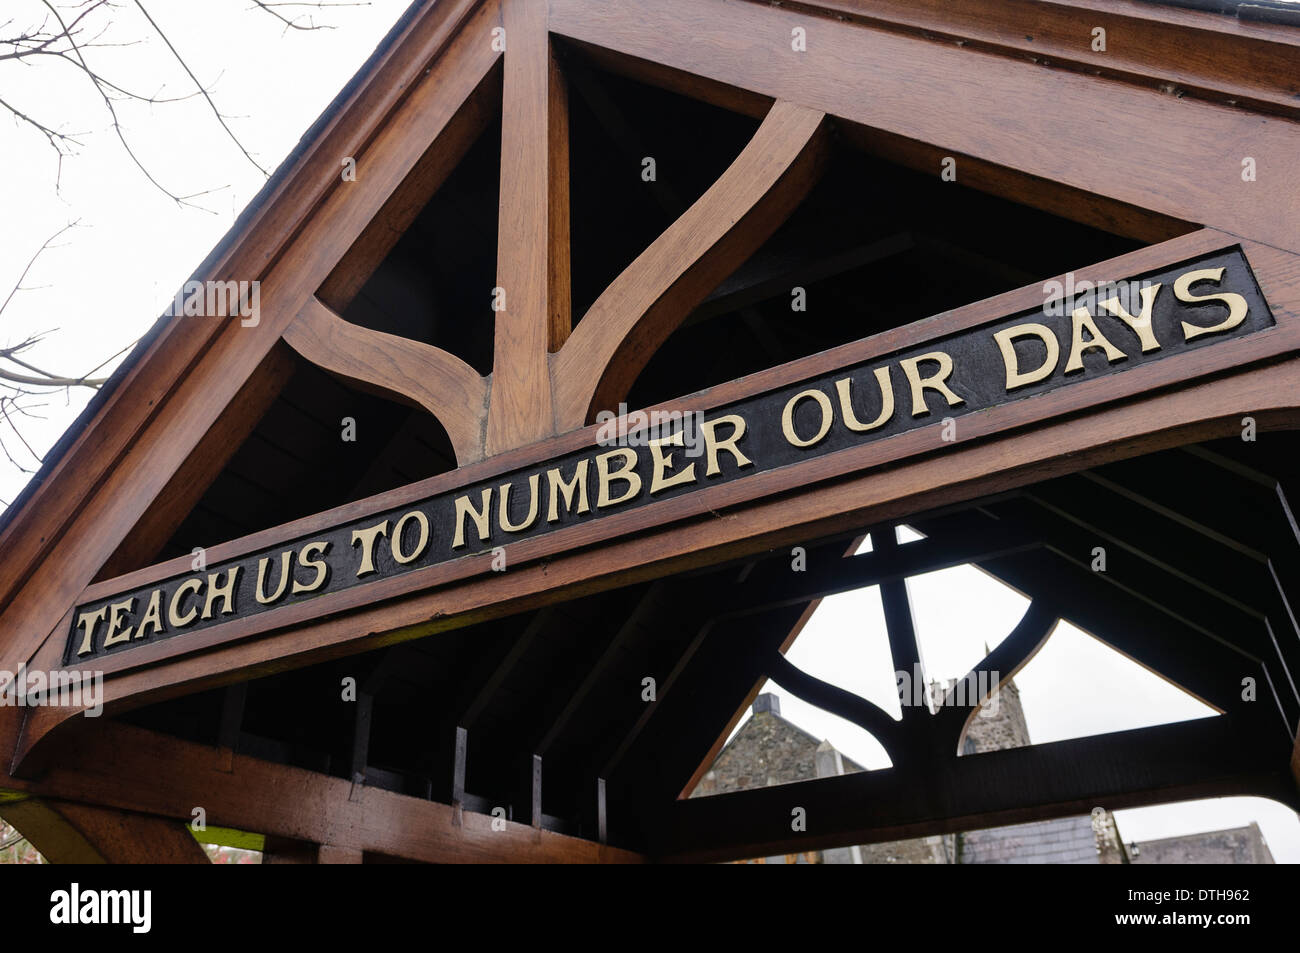 Melden Sie sich über das Tor von Inver Kirche, Larne sagen "lehren uns, unsere Tage zu numerieren" Stockfoto